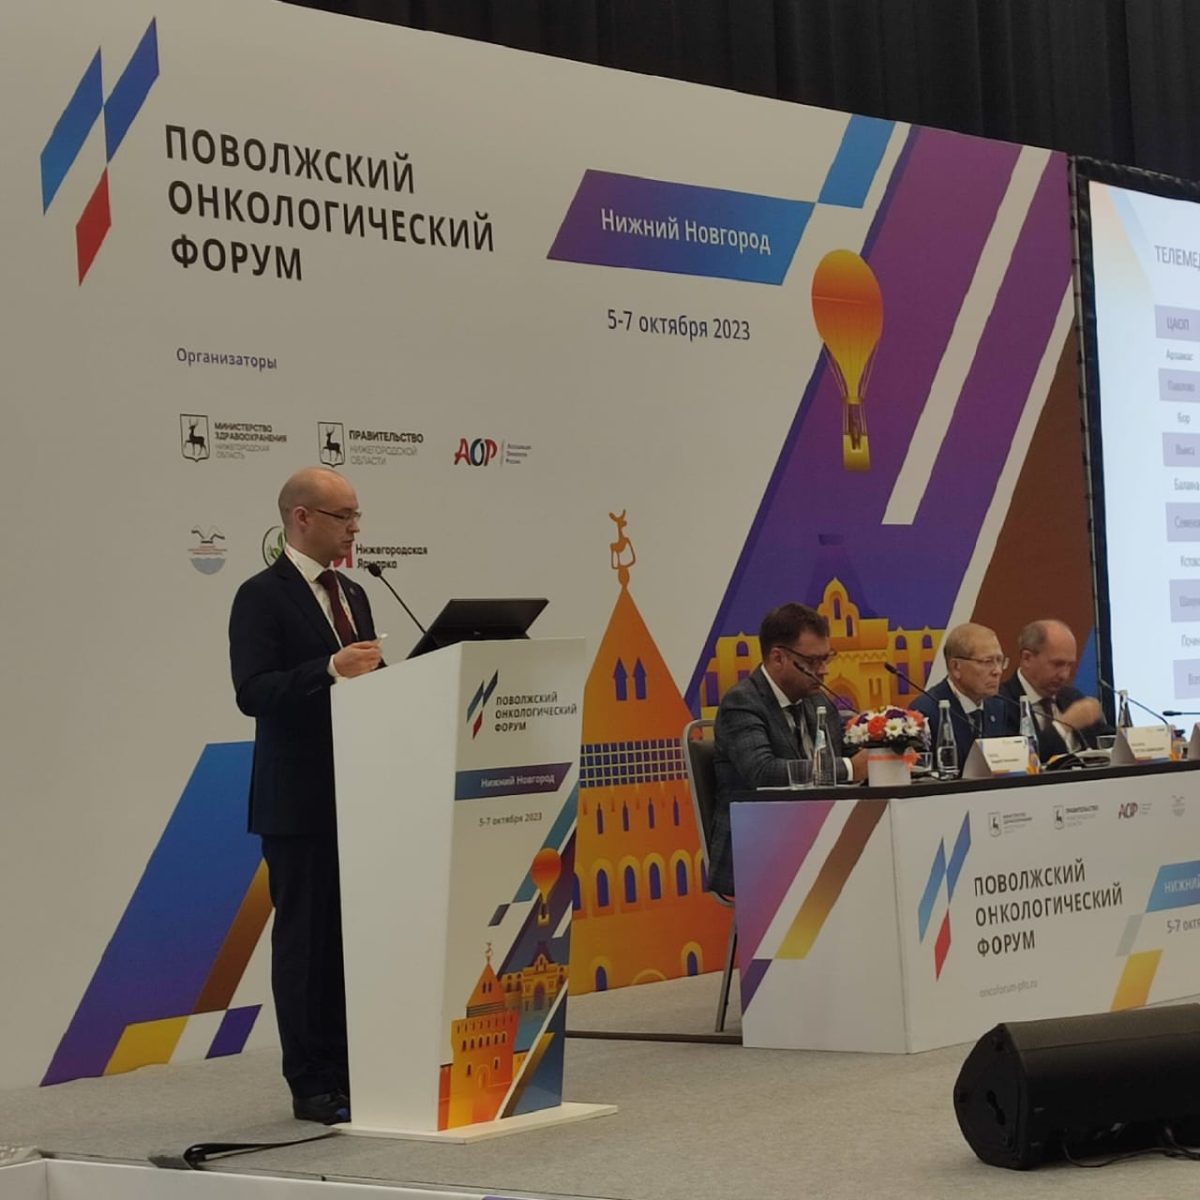 Более 600 специалистов участвуют во II Поволжском онкологическом форуме в Нижнем Новгороде